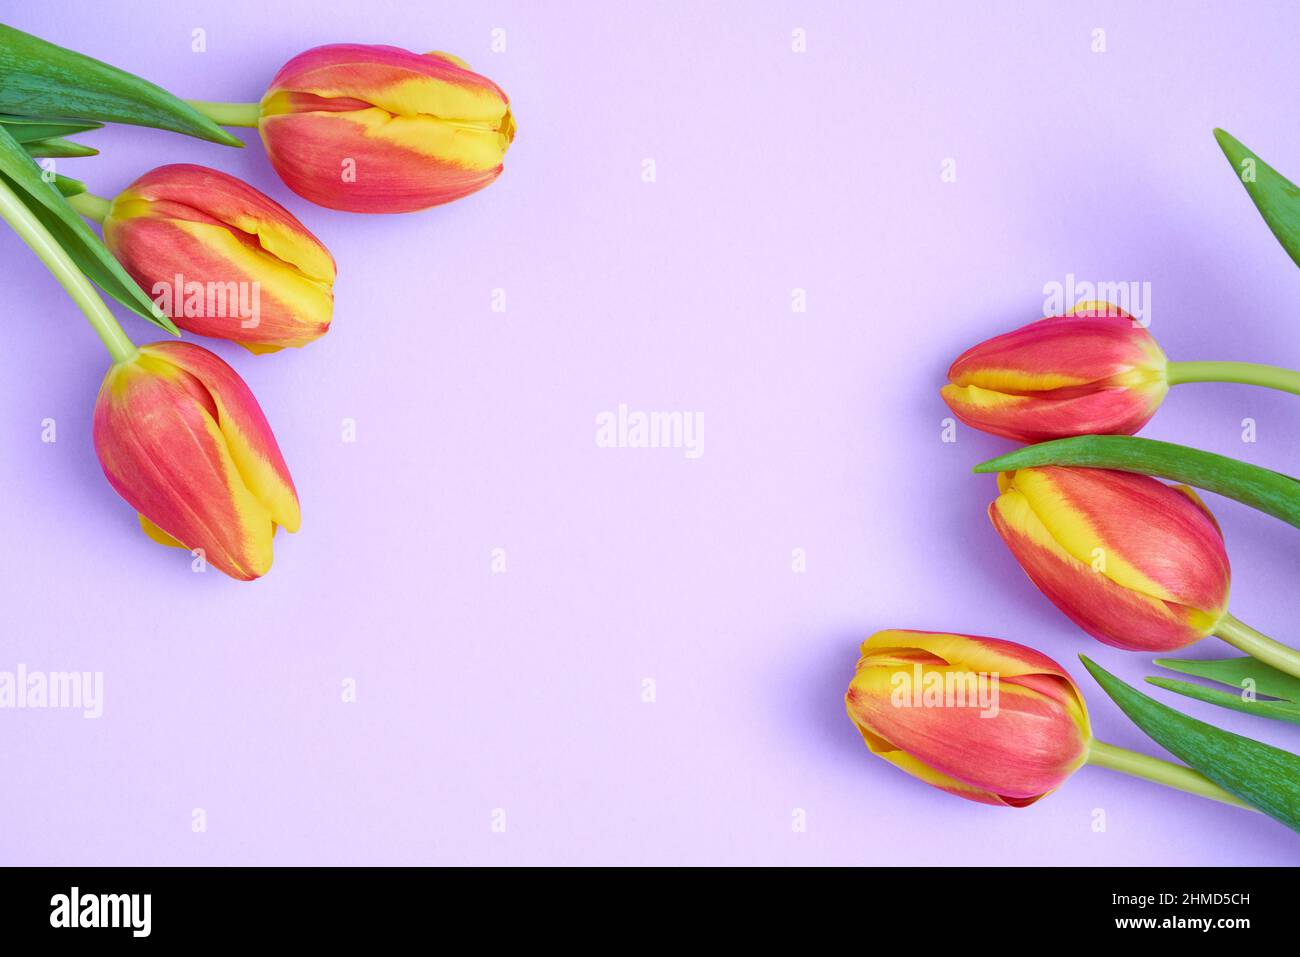 Imagen floral fresca y colorida de tulipanes naranja y amarillo sobre una tarjeta de color lavanda de fondo en contraste. Banner de diseño plano con espacio de copia. Vista superior. Foto de stock